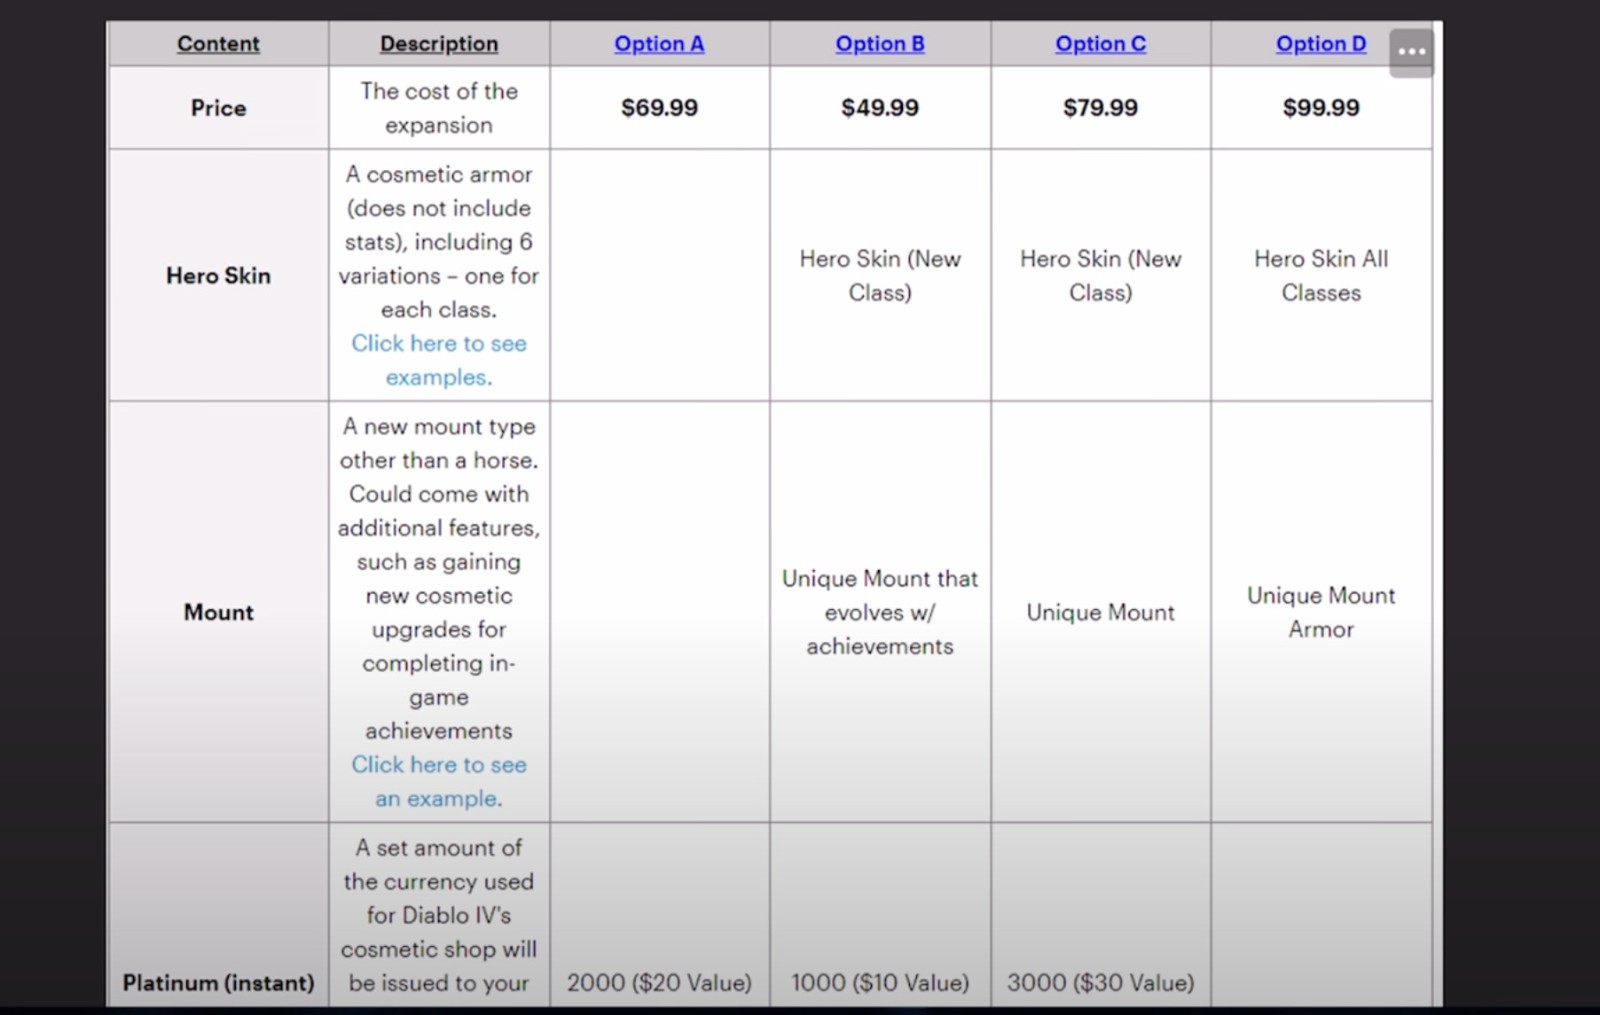 《暗黑4》质料片外部审核激进 售价最高抵达100美元